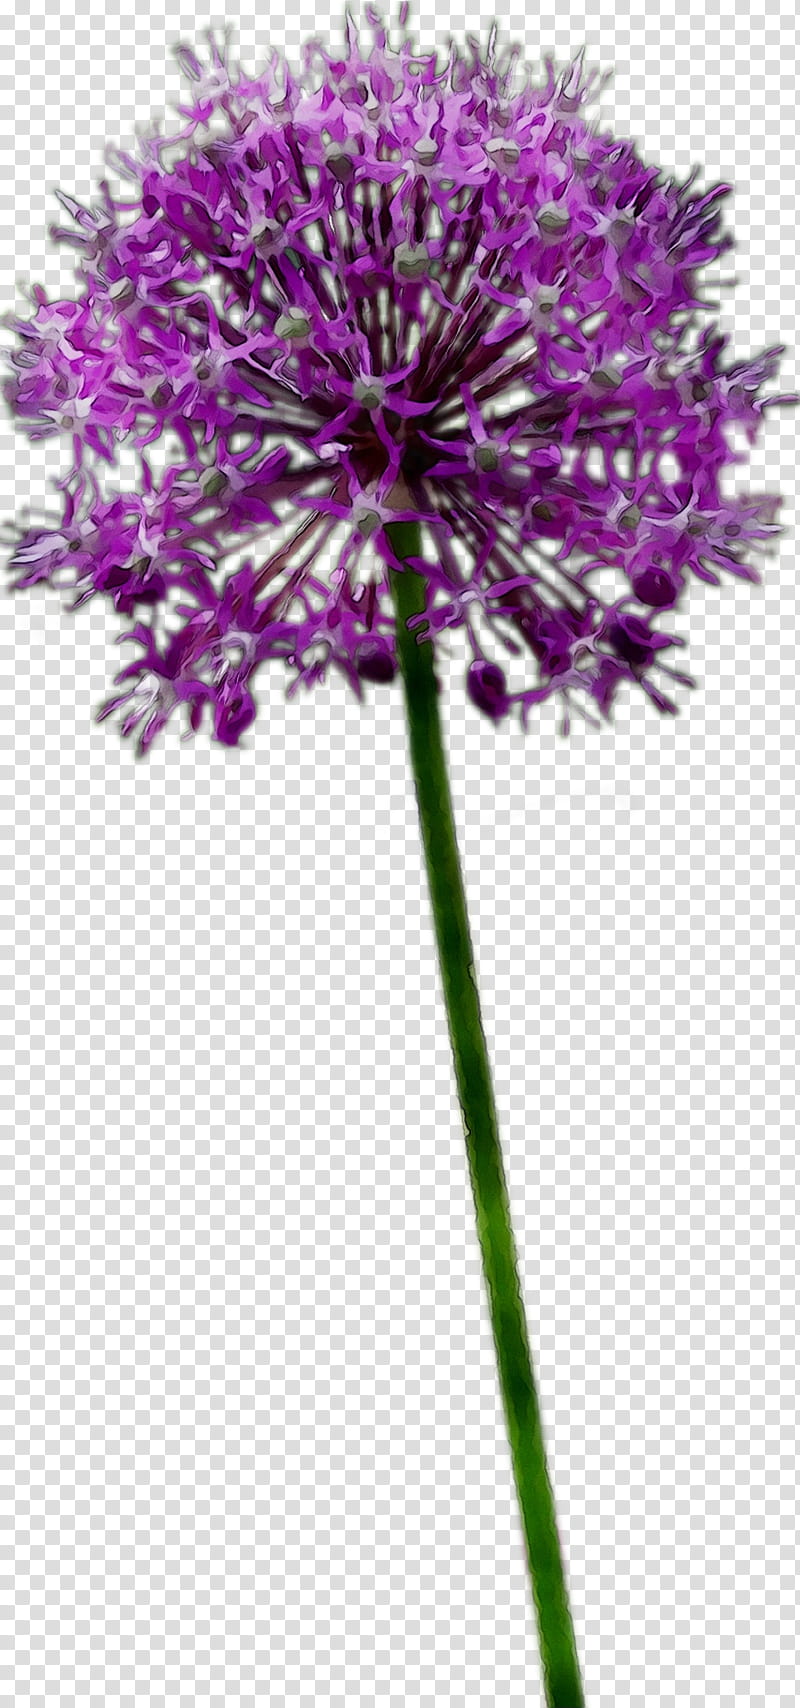 Flowers, Plant Stem, Milk Thistle, Cut Flowers, Purple, Onion, Plants, Genus transparent background PNG clipart